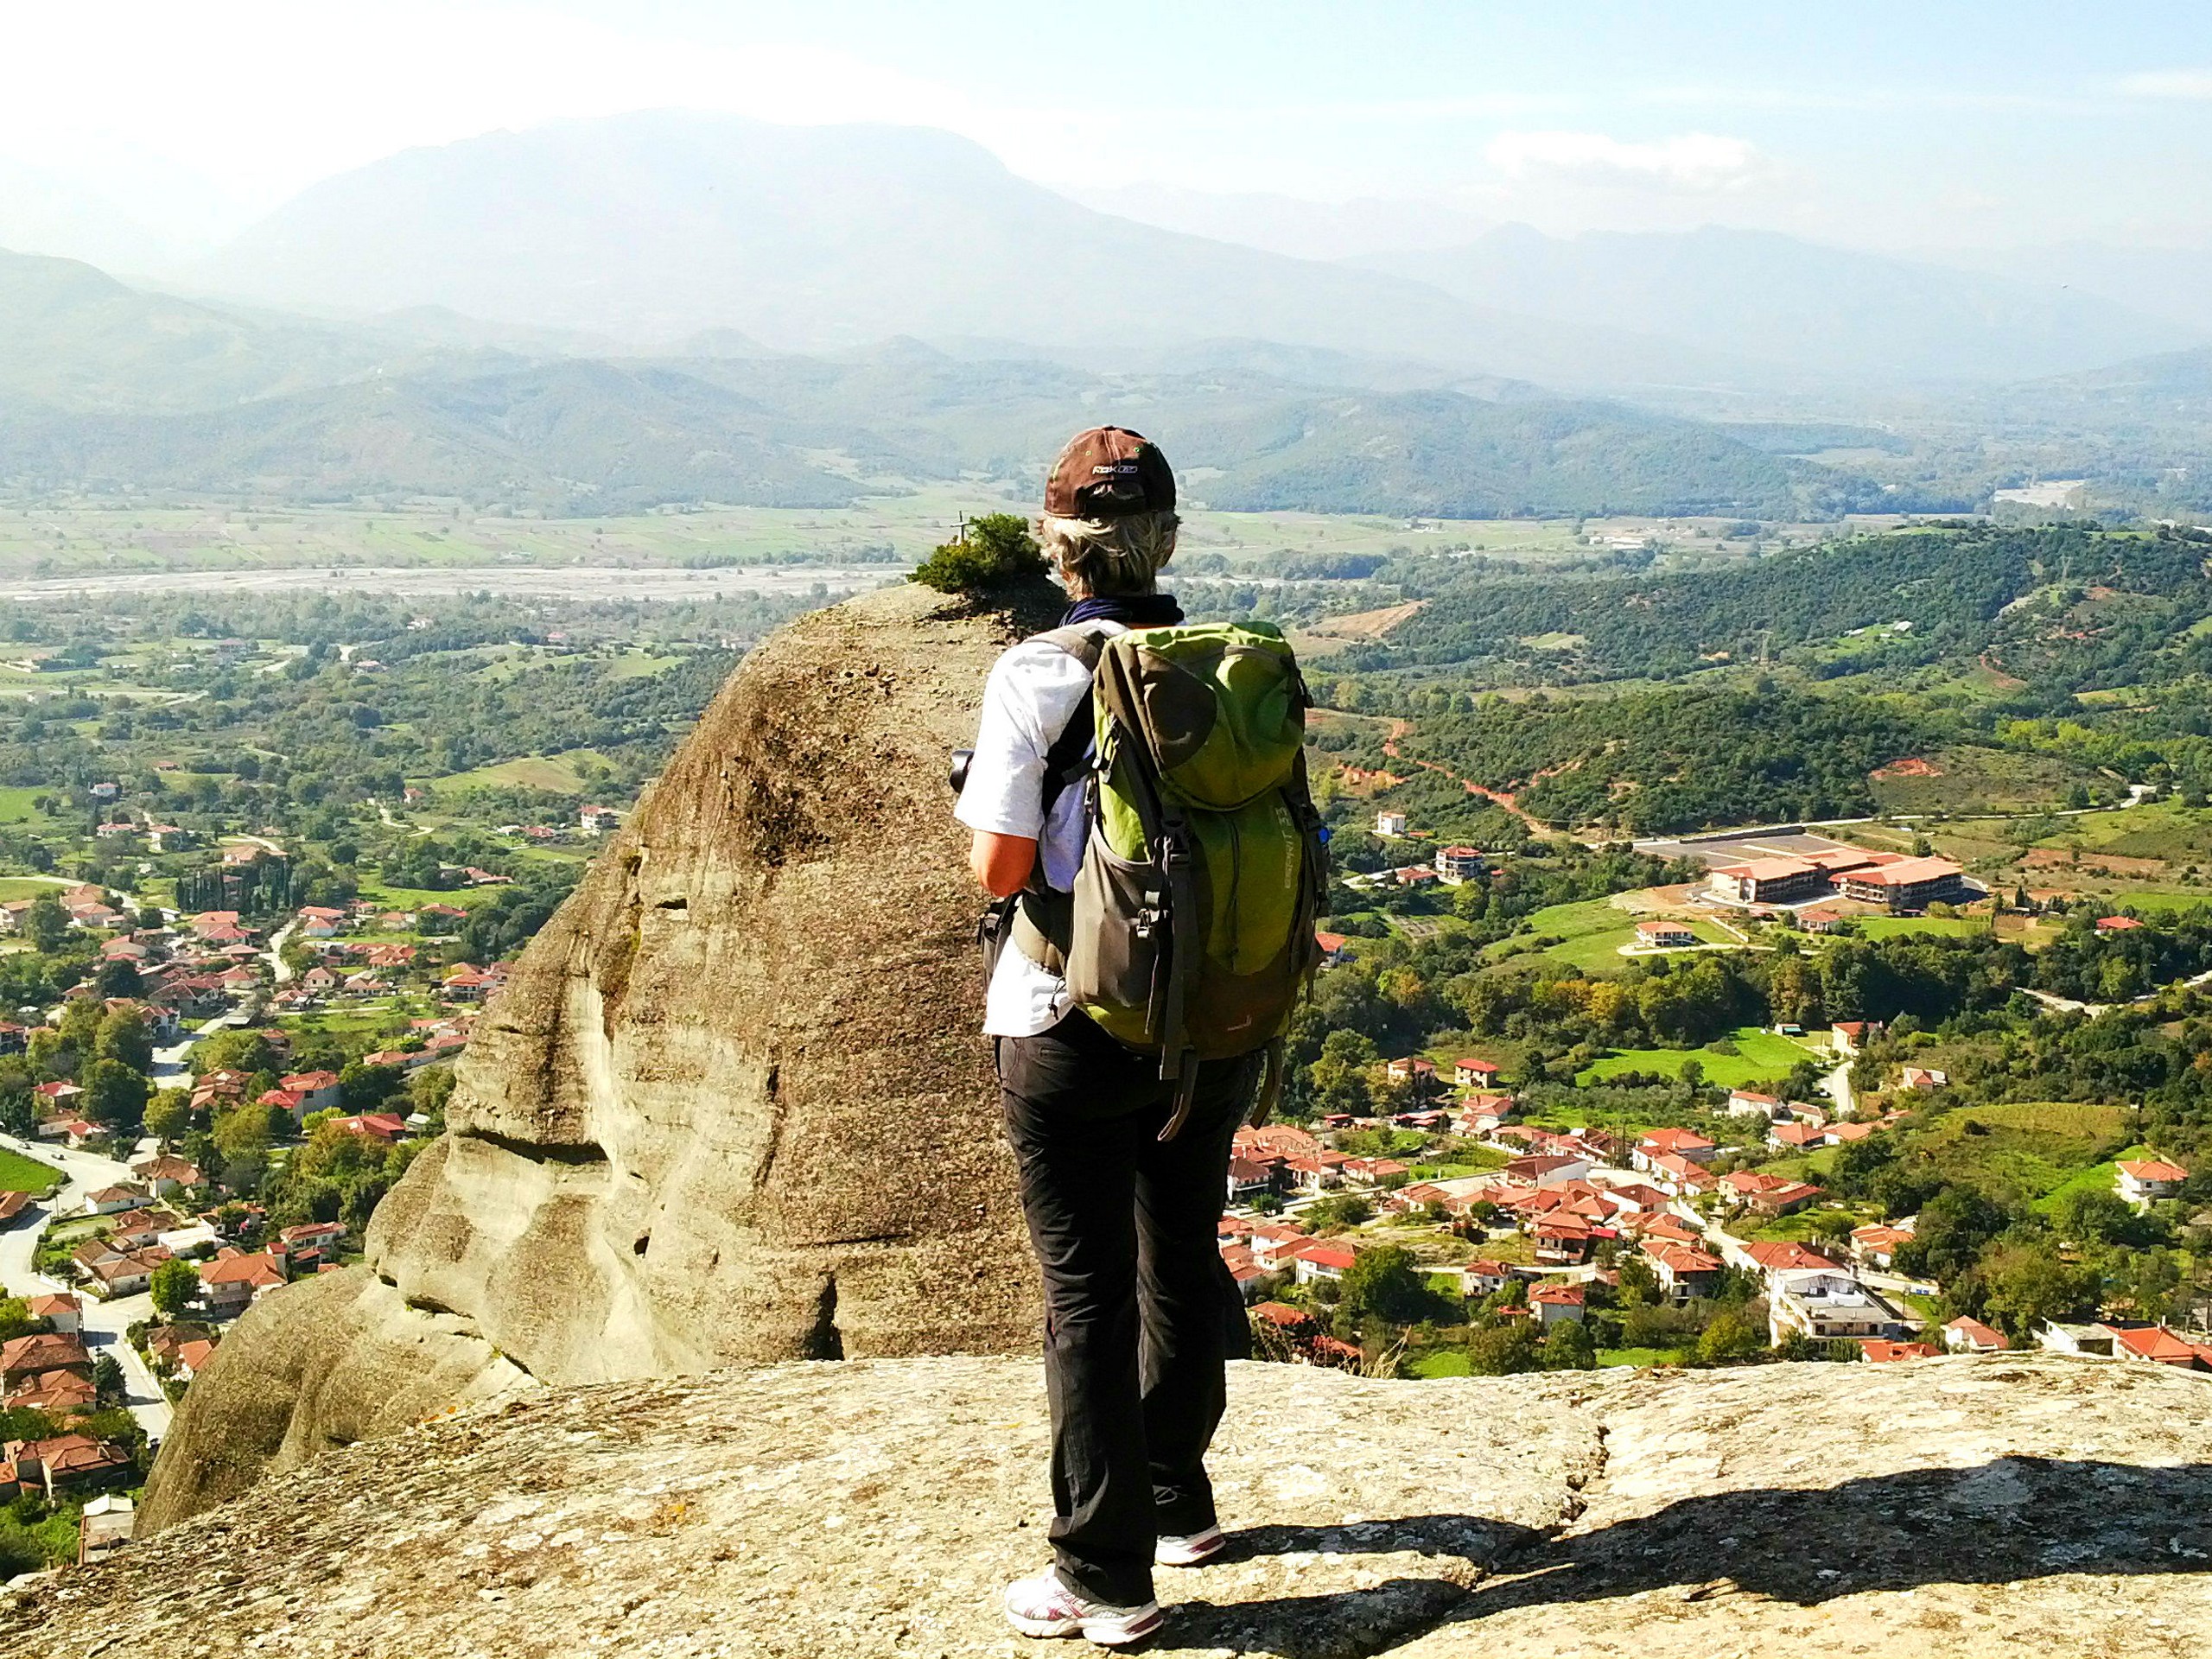 Hiker exploring Meteora rock formations in Greece